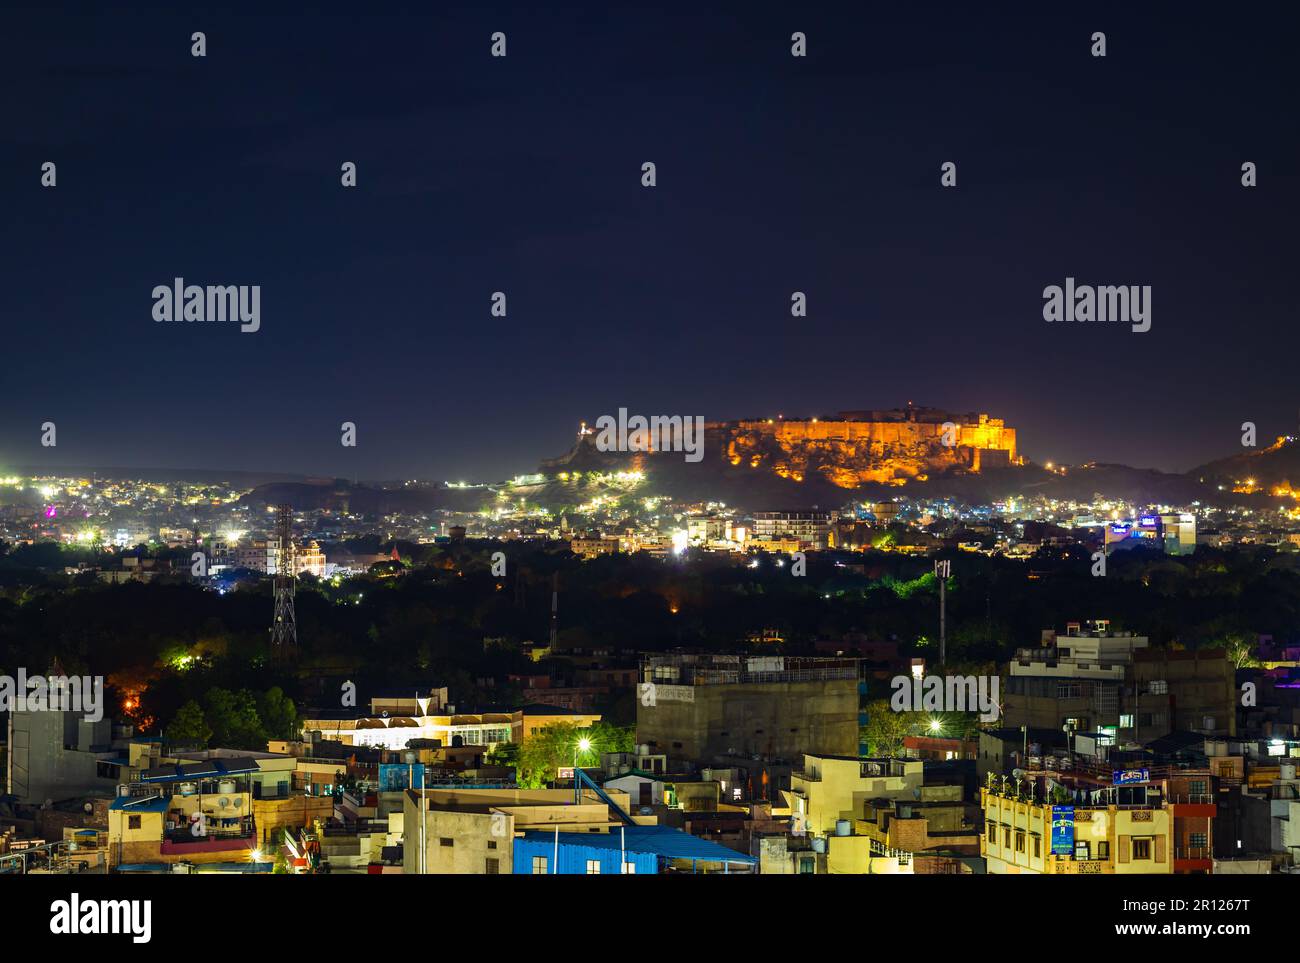 Das Fort mehrangarh mit nächtlichem Blick auf die Landschaft der Stadt und Lichtern bei Nacht wird am 05 2023. Mai im jodhpur rajasthan india aufgenommen. Stockfoto